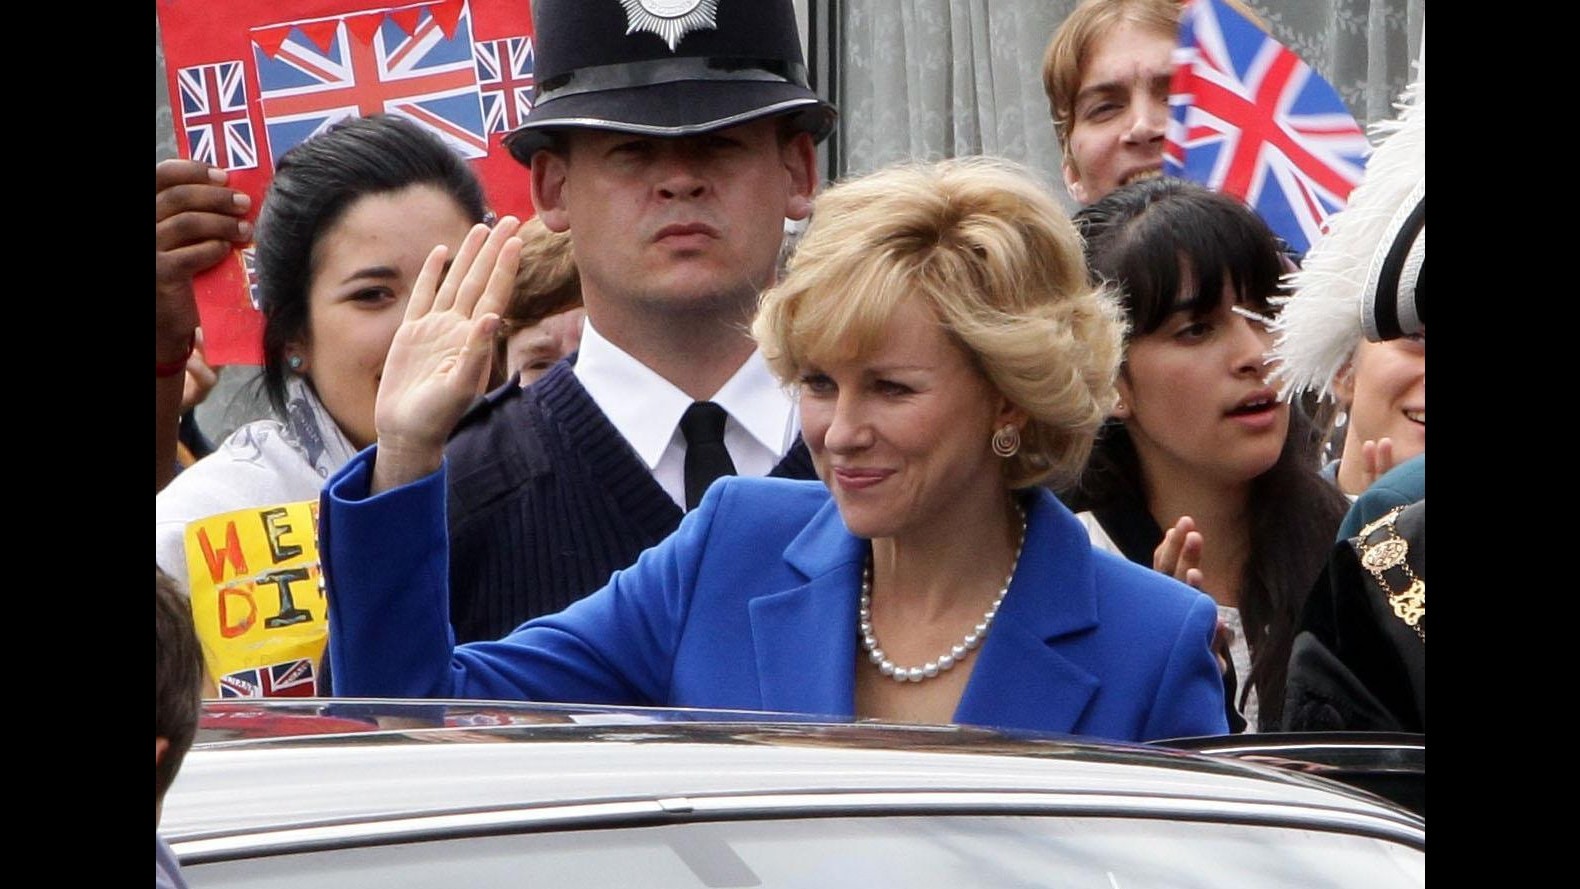 Stampa inglese stronca film su Lady Diana, per critica è un disastro